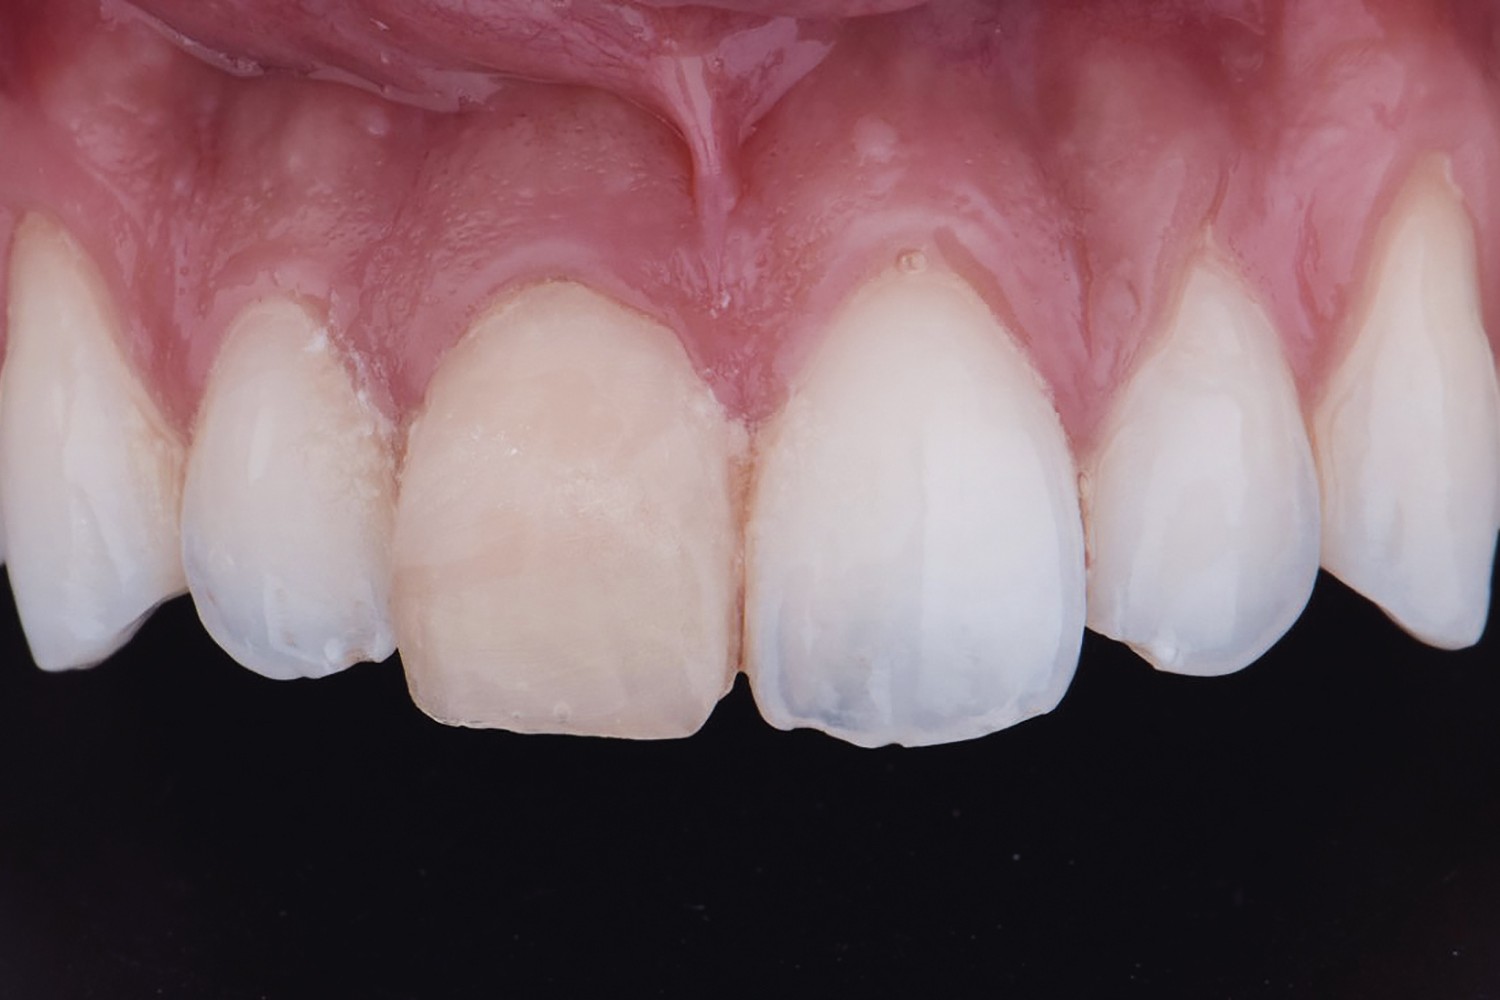 Fratura extensa de dente anterior vital: um desafio estético e biológico